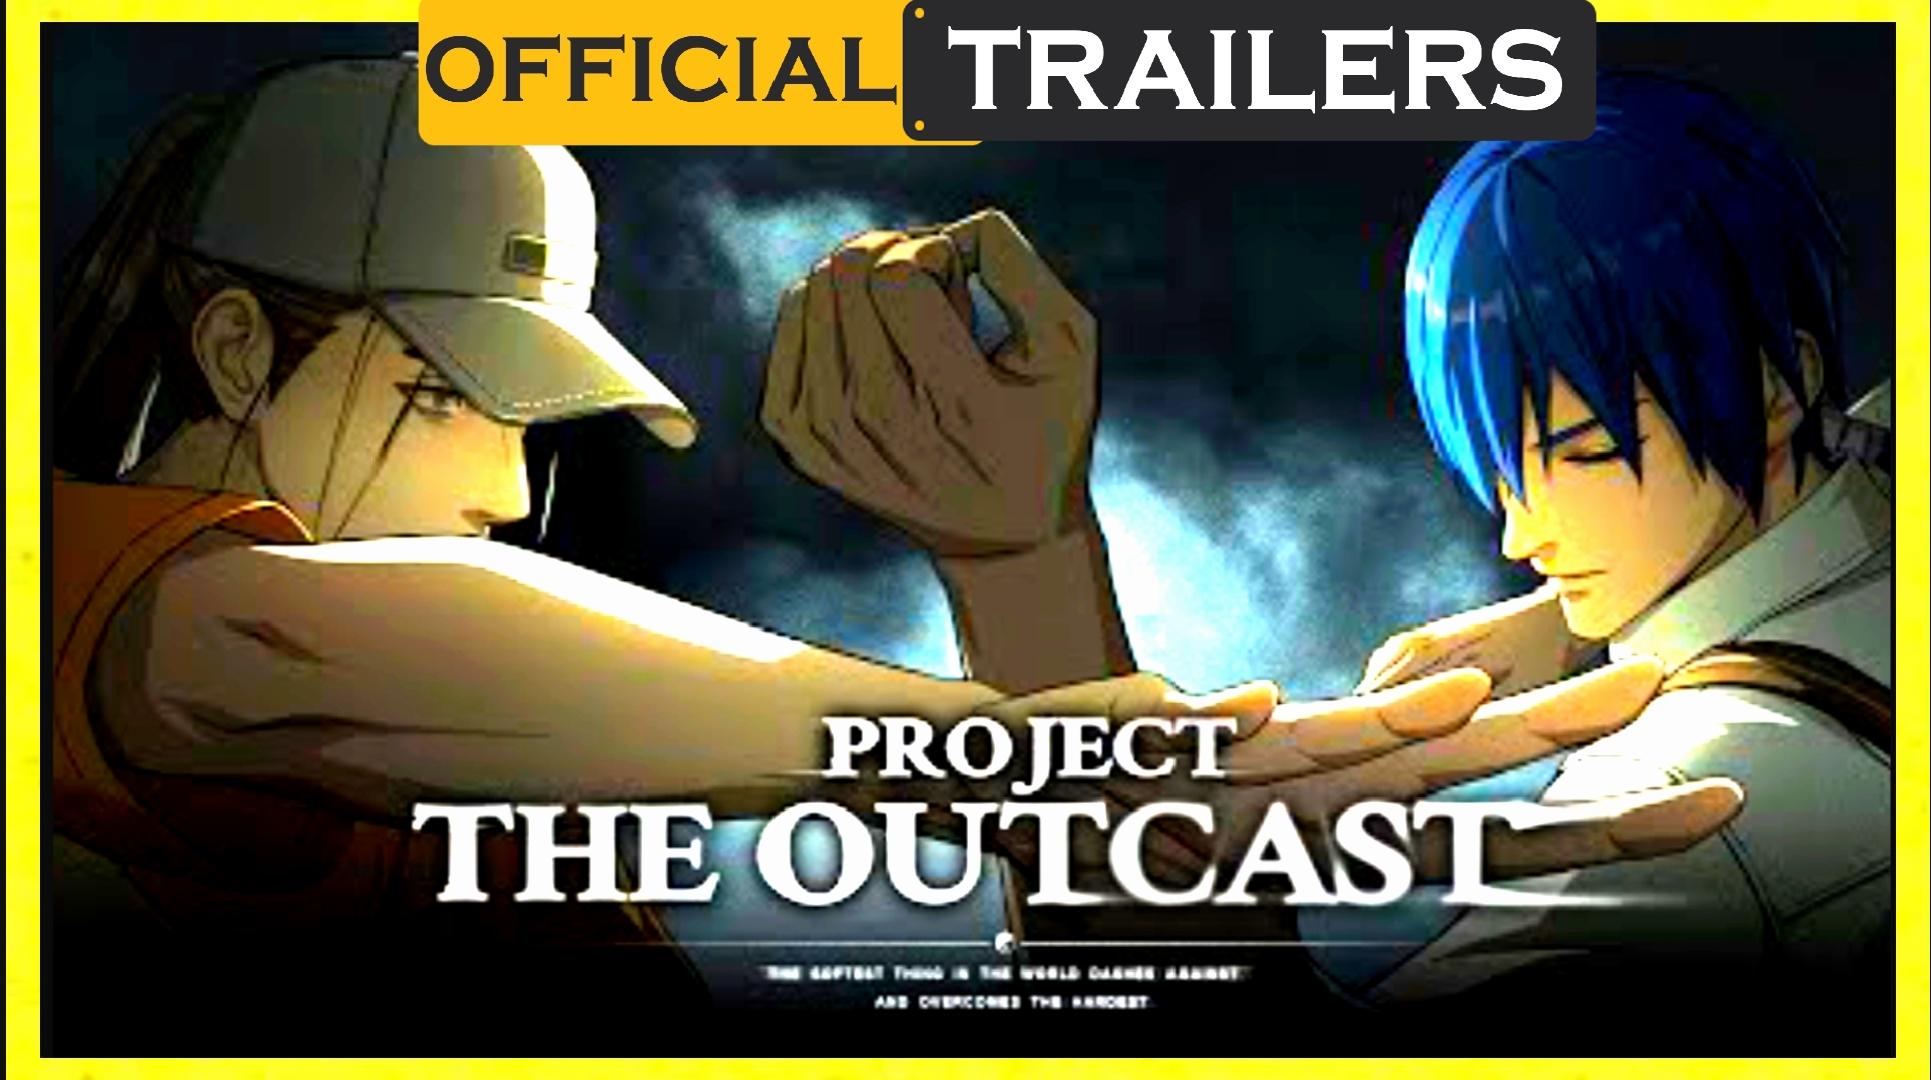 Hitori no Shita: The Outcast mobile game announced, trailer